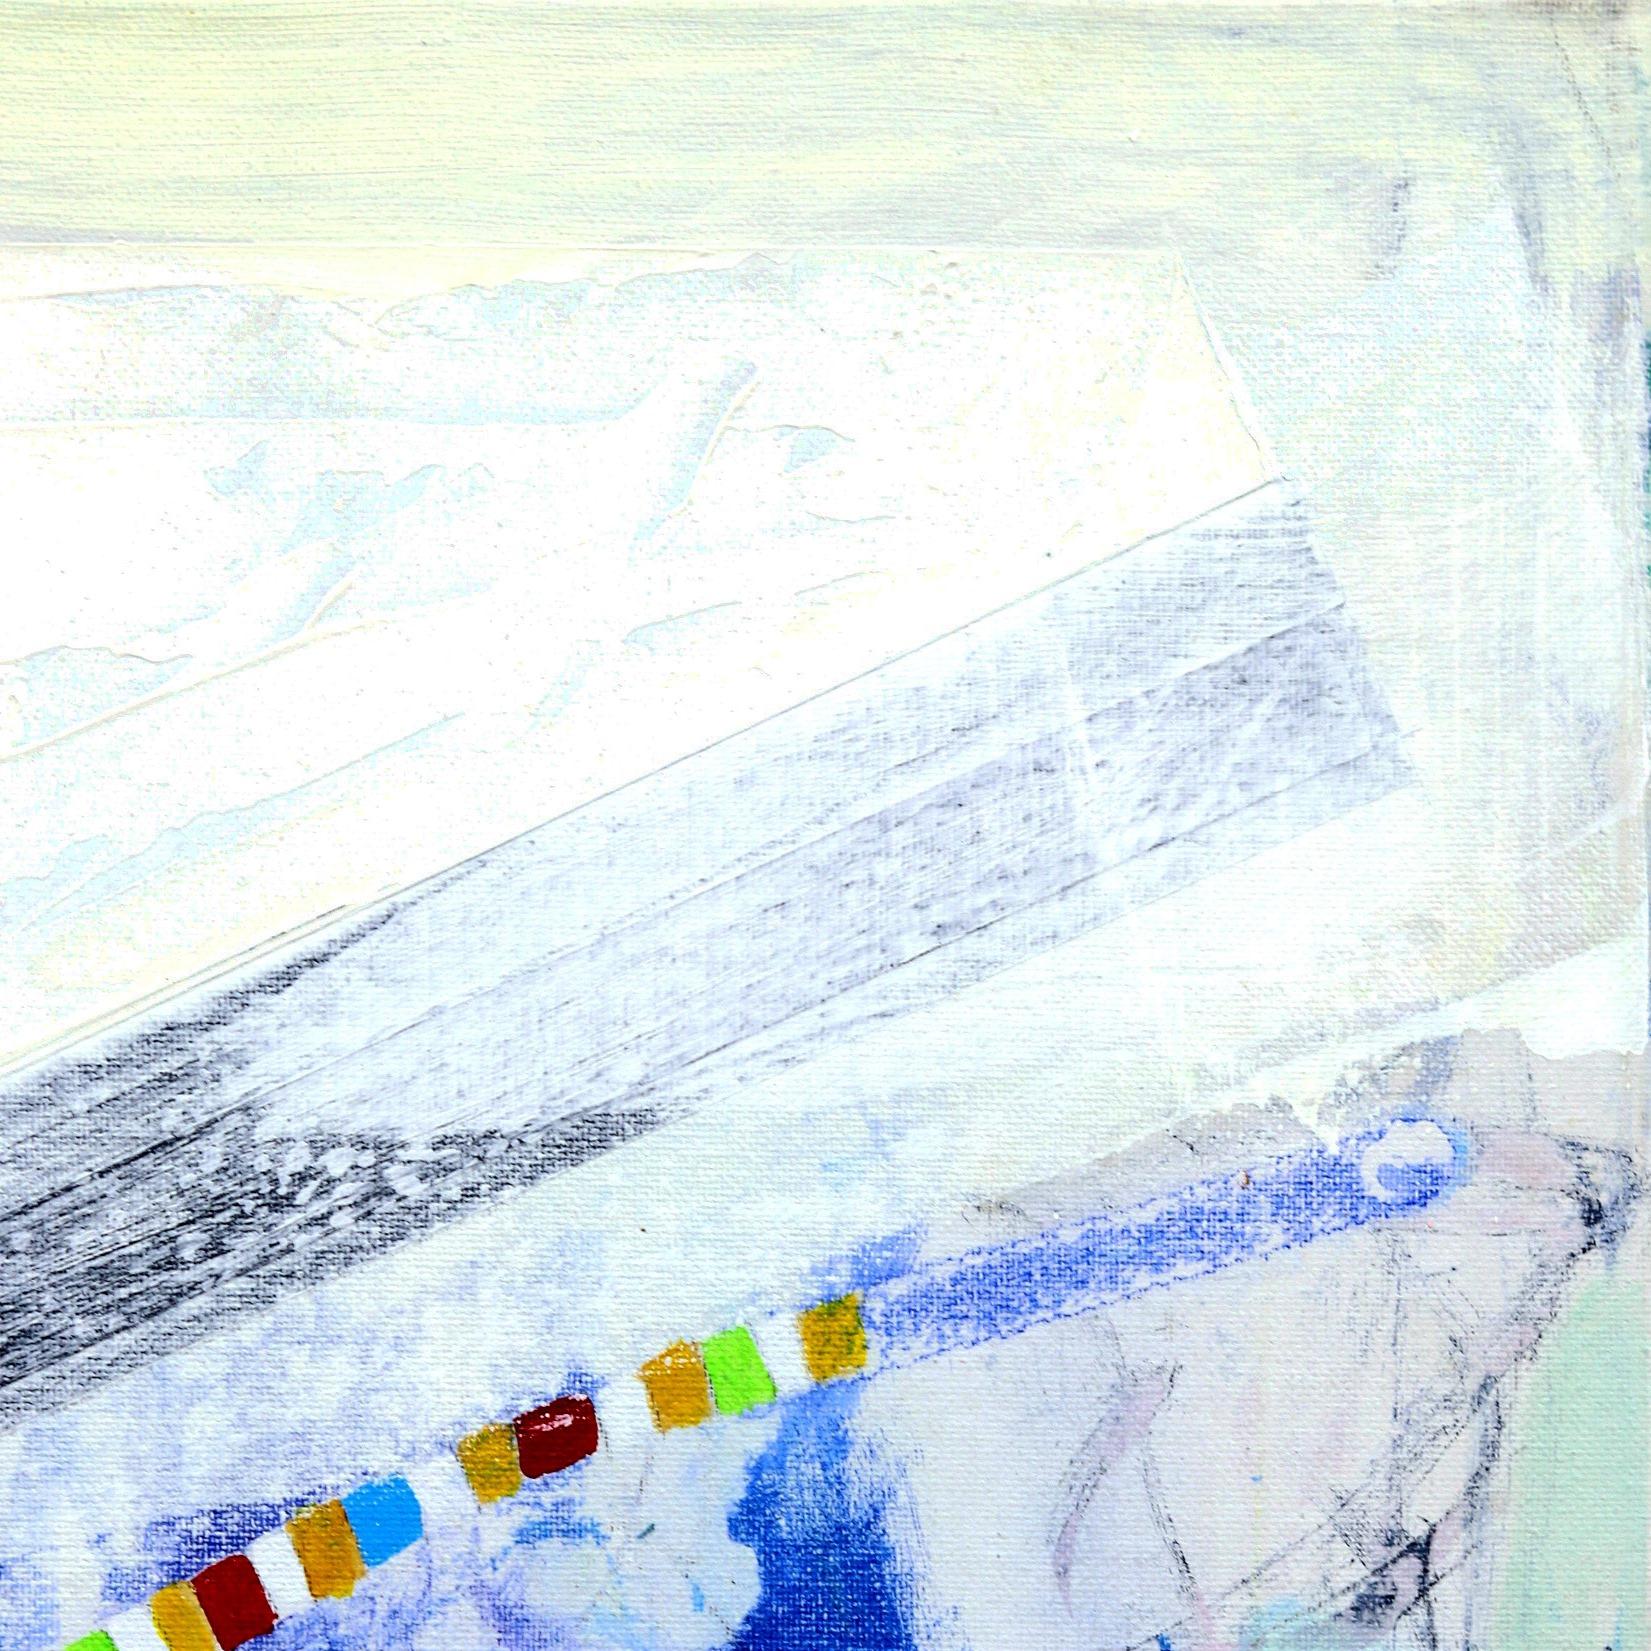 Les œuvres d'art expressionnistes abstraites de Jodi Fuchs dégagent une énergie indéniable et captivent l'œil par leurs couleurs vibrantes et leurs coups de pinceau dynamiques. Influencée par les aspects métaphysiques de la vie, l'œuvre de Fuchs